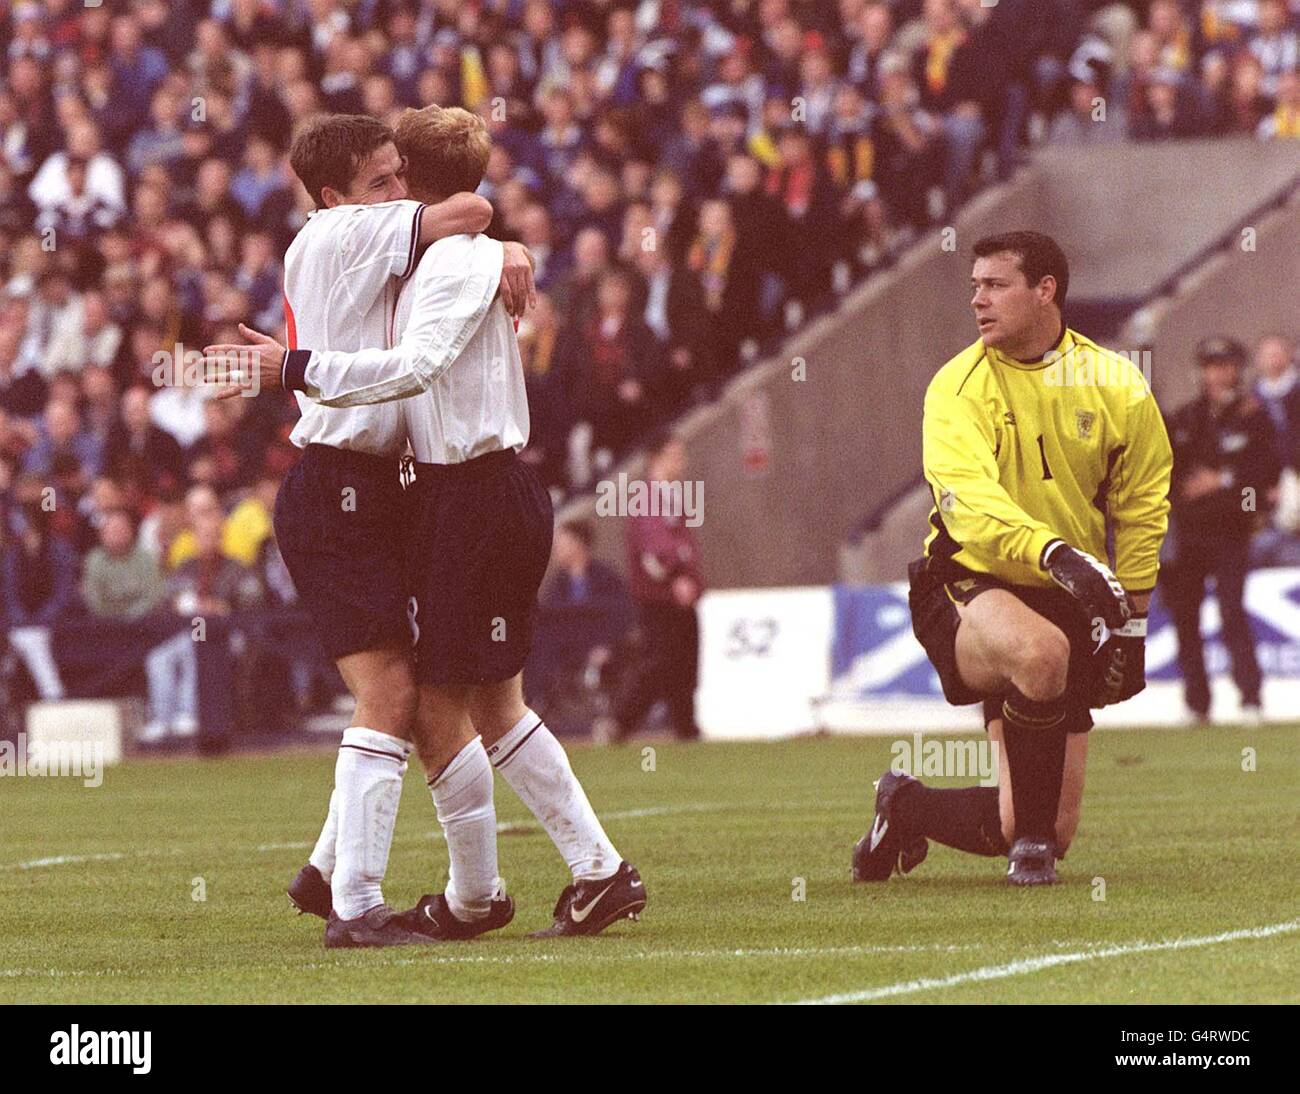 Inghilterra Joy e Scozia disperano come Michael Owen (L) si congratula con Paul Scholes dopo aver segnato il suo secondo gol durante la partita di calcio Euro 2000 all'Hampden Park. * Punteggio finale: Scozia 0 Inghilterra 2. * mentre il portiere Neil Sullivan guarda. Foto Stock